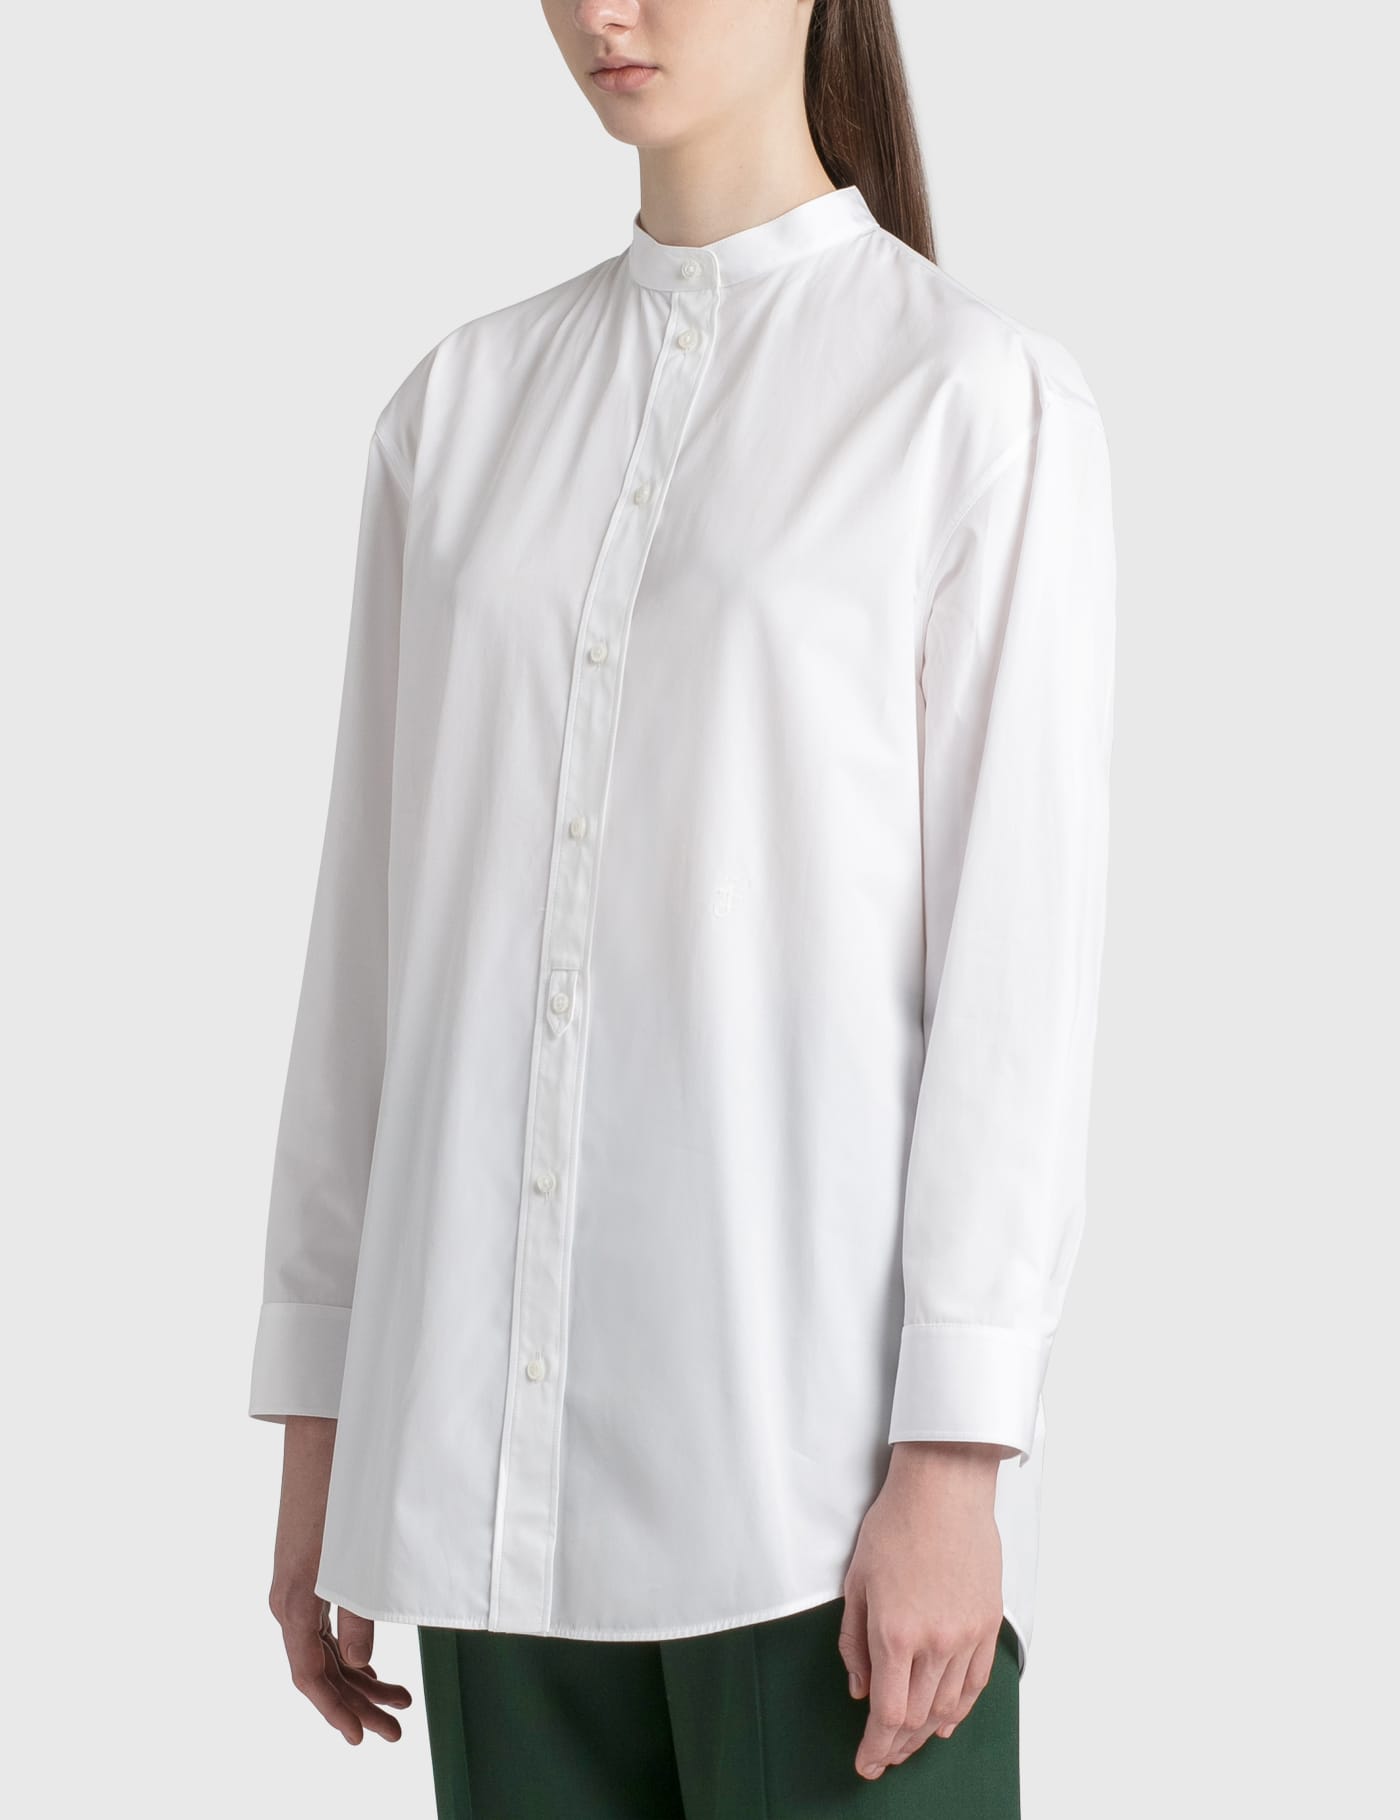 Jil Sander - Organic Poplin Shirt | HBX - Globally Curated Fashion 